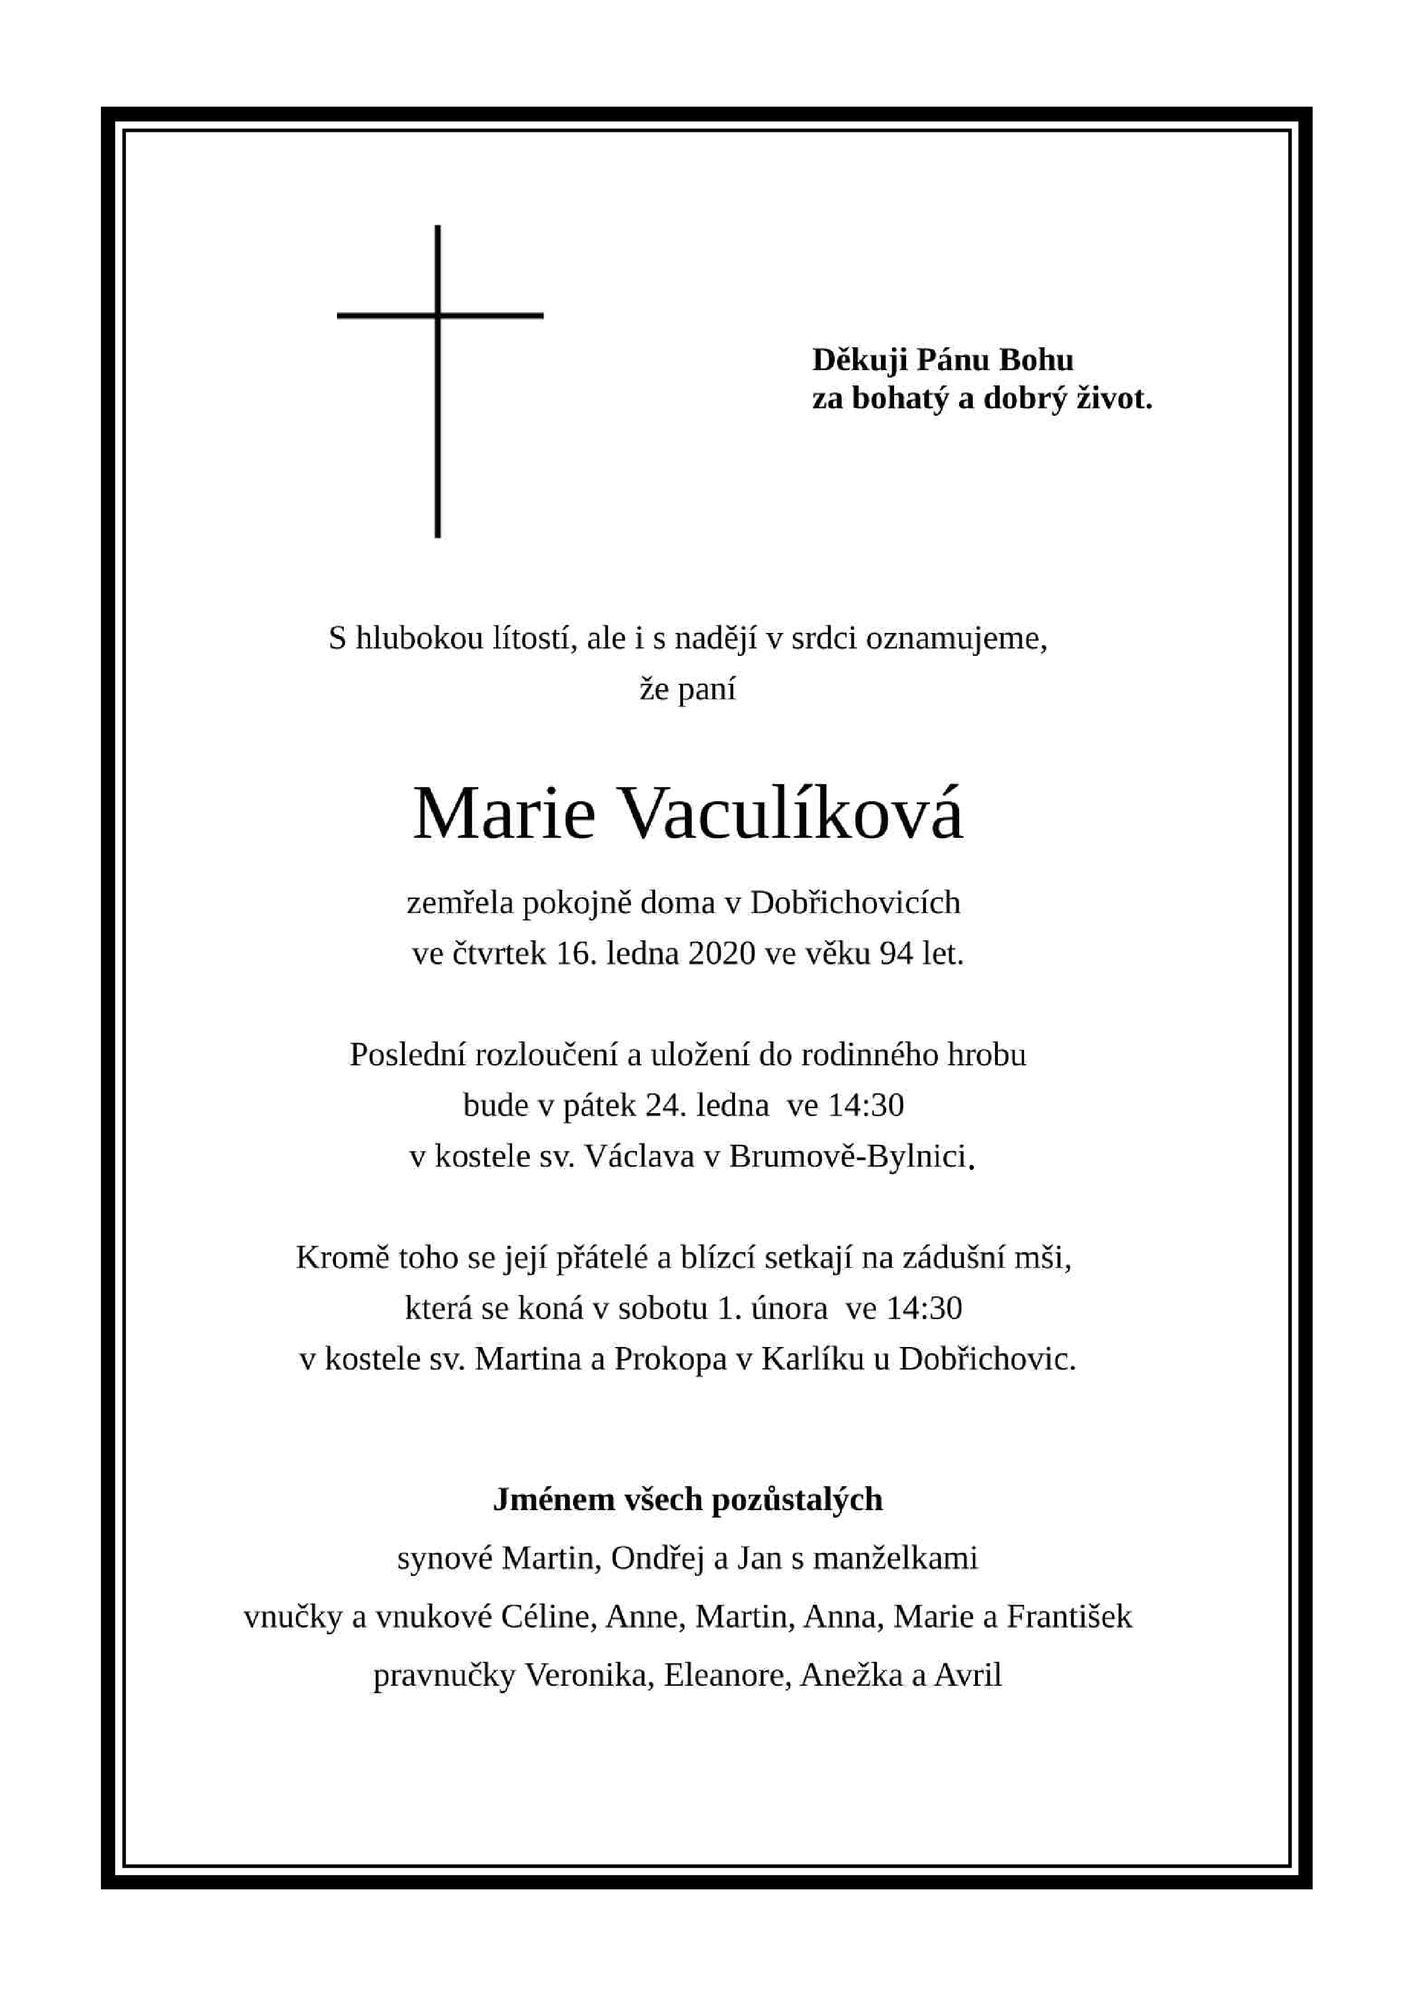 Marie Vaculíková